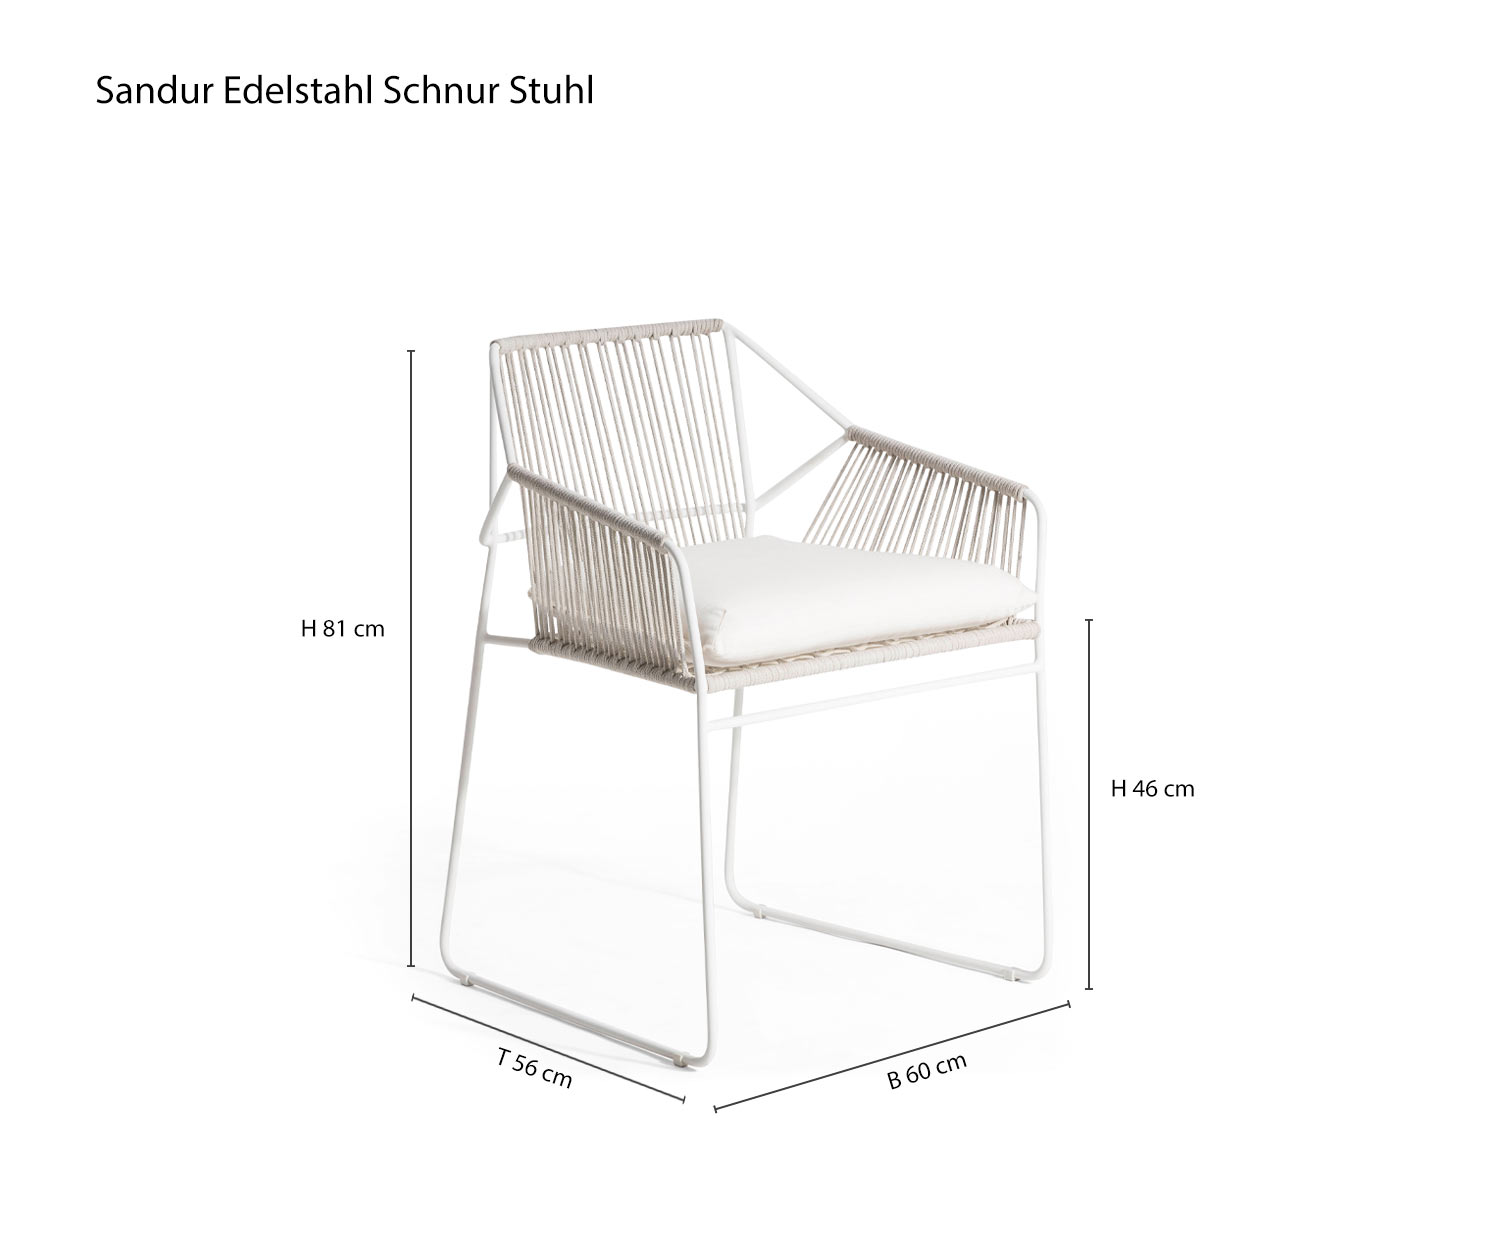 Chaise de jardin Sandur de Oasiq Armbespannung Esquisse Dimensions Tailles